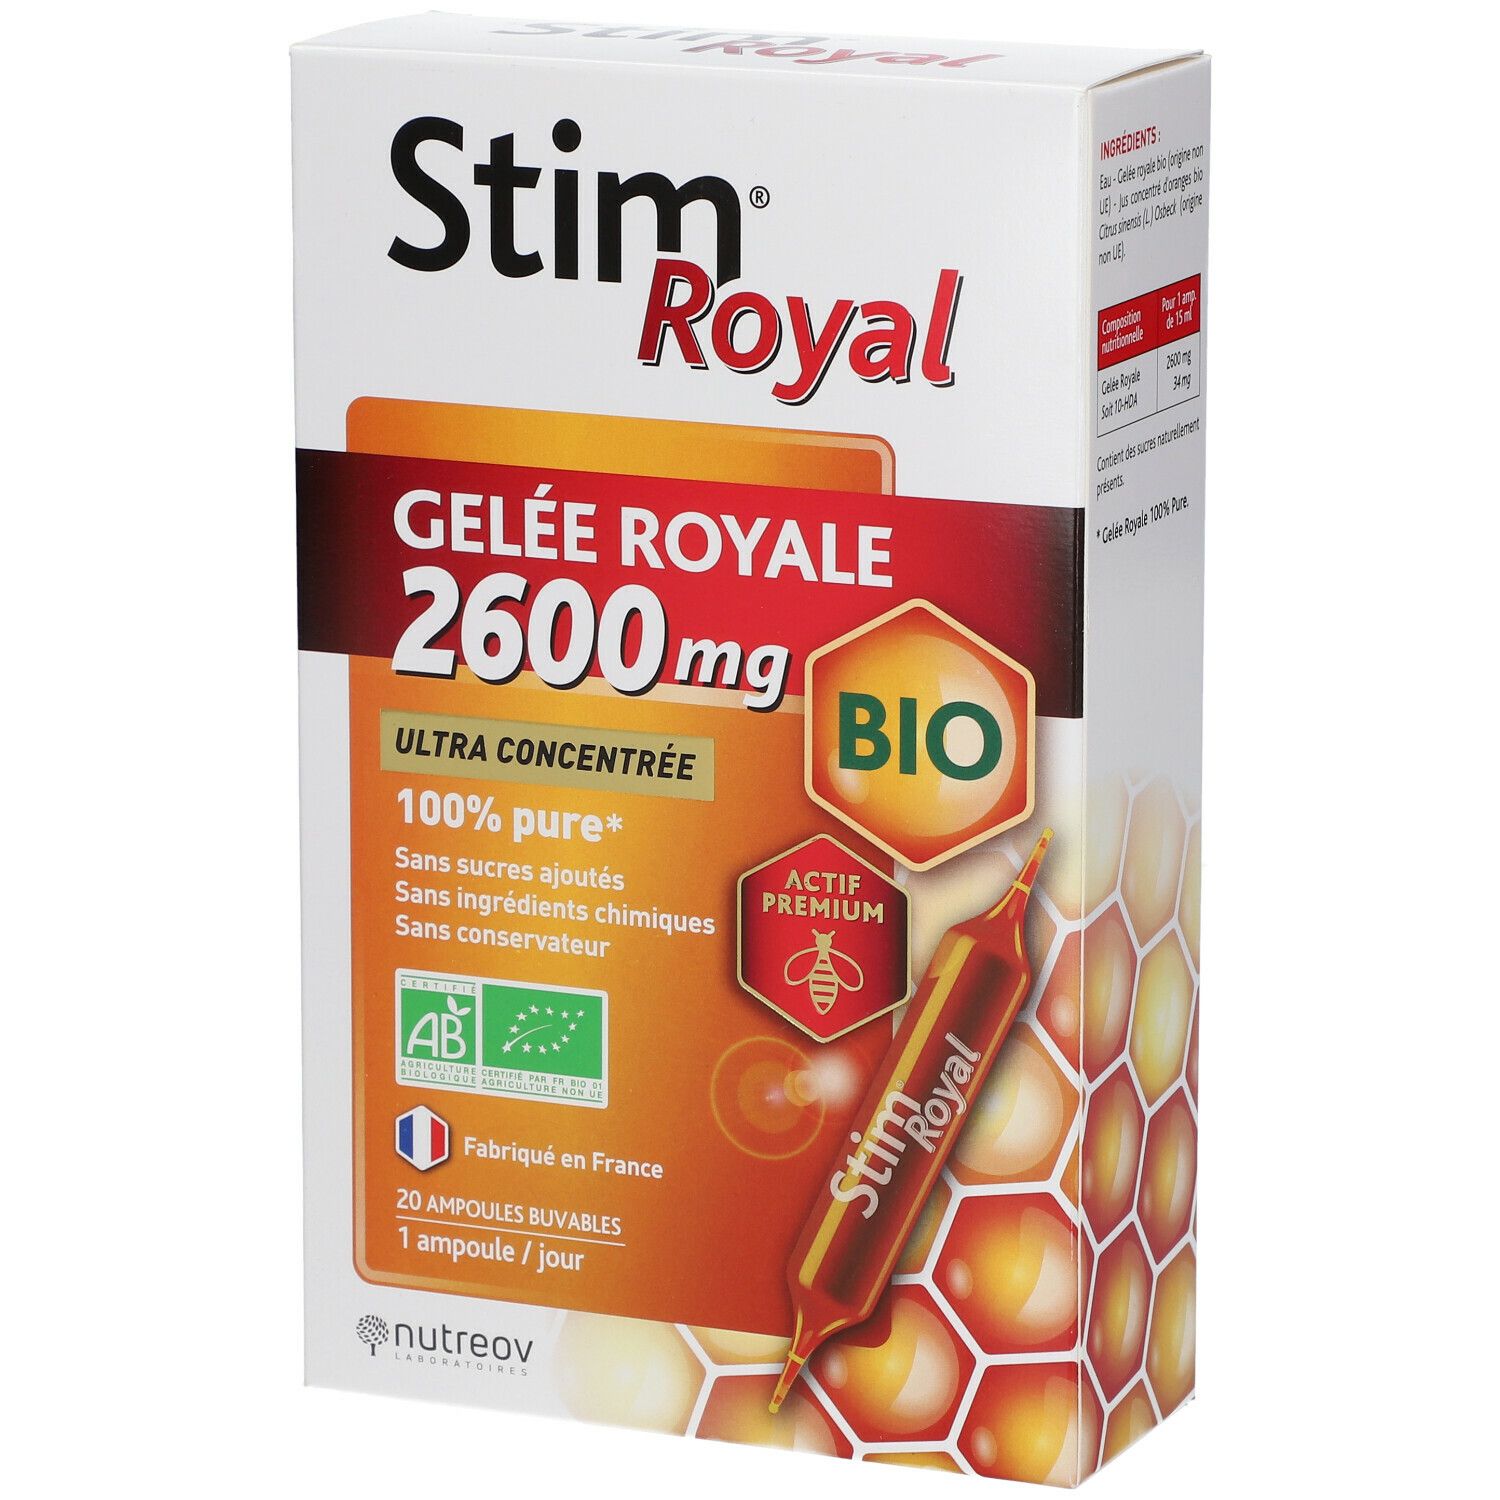 Nutreov Physcience Stim® Royal Gelée Royale BIO 2600 mg